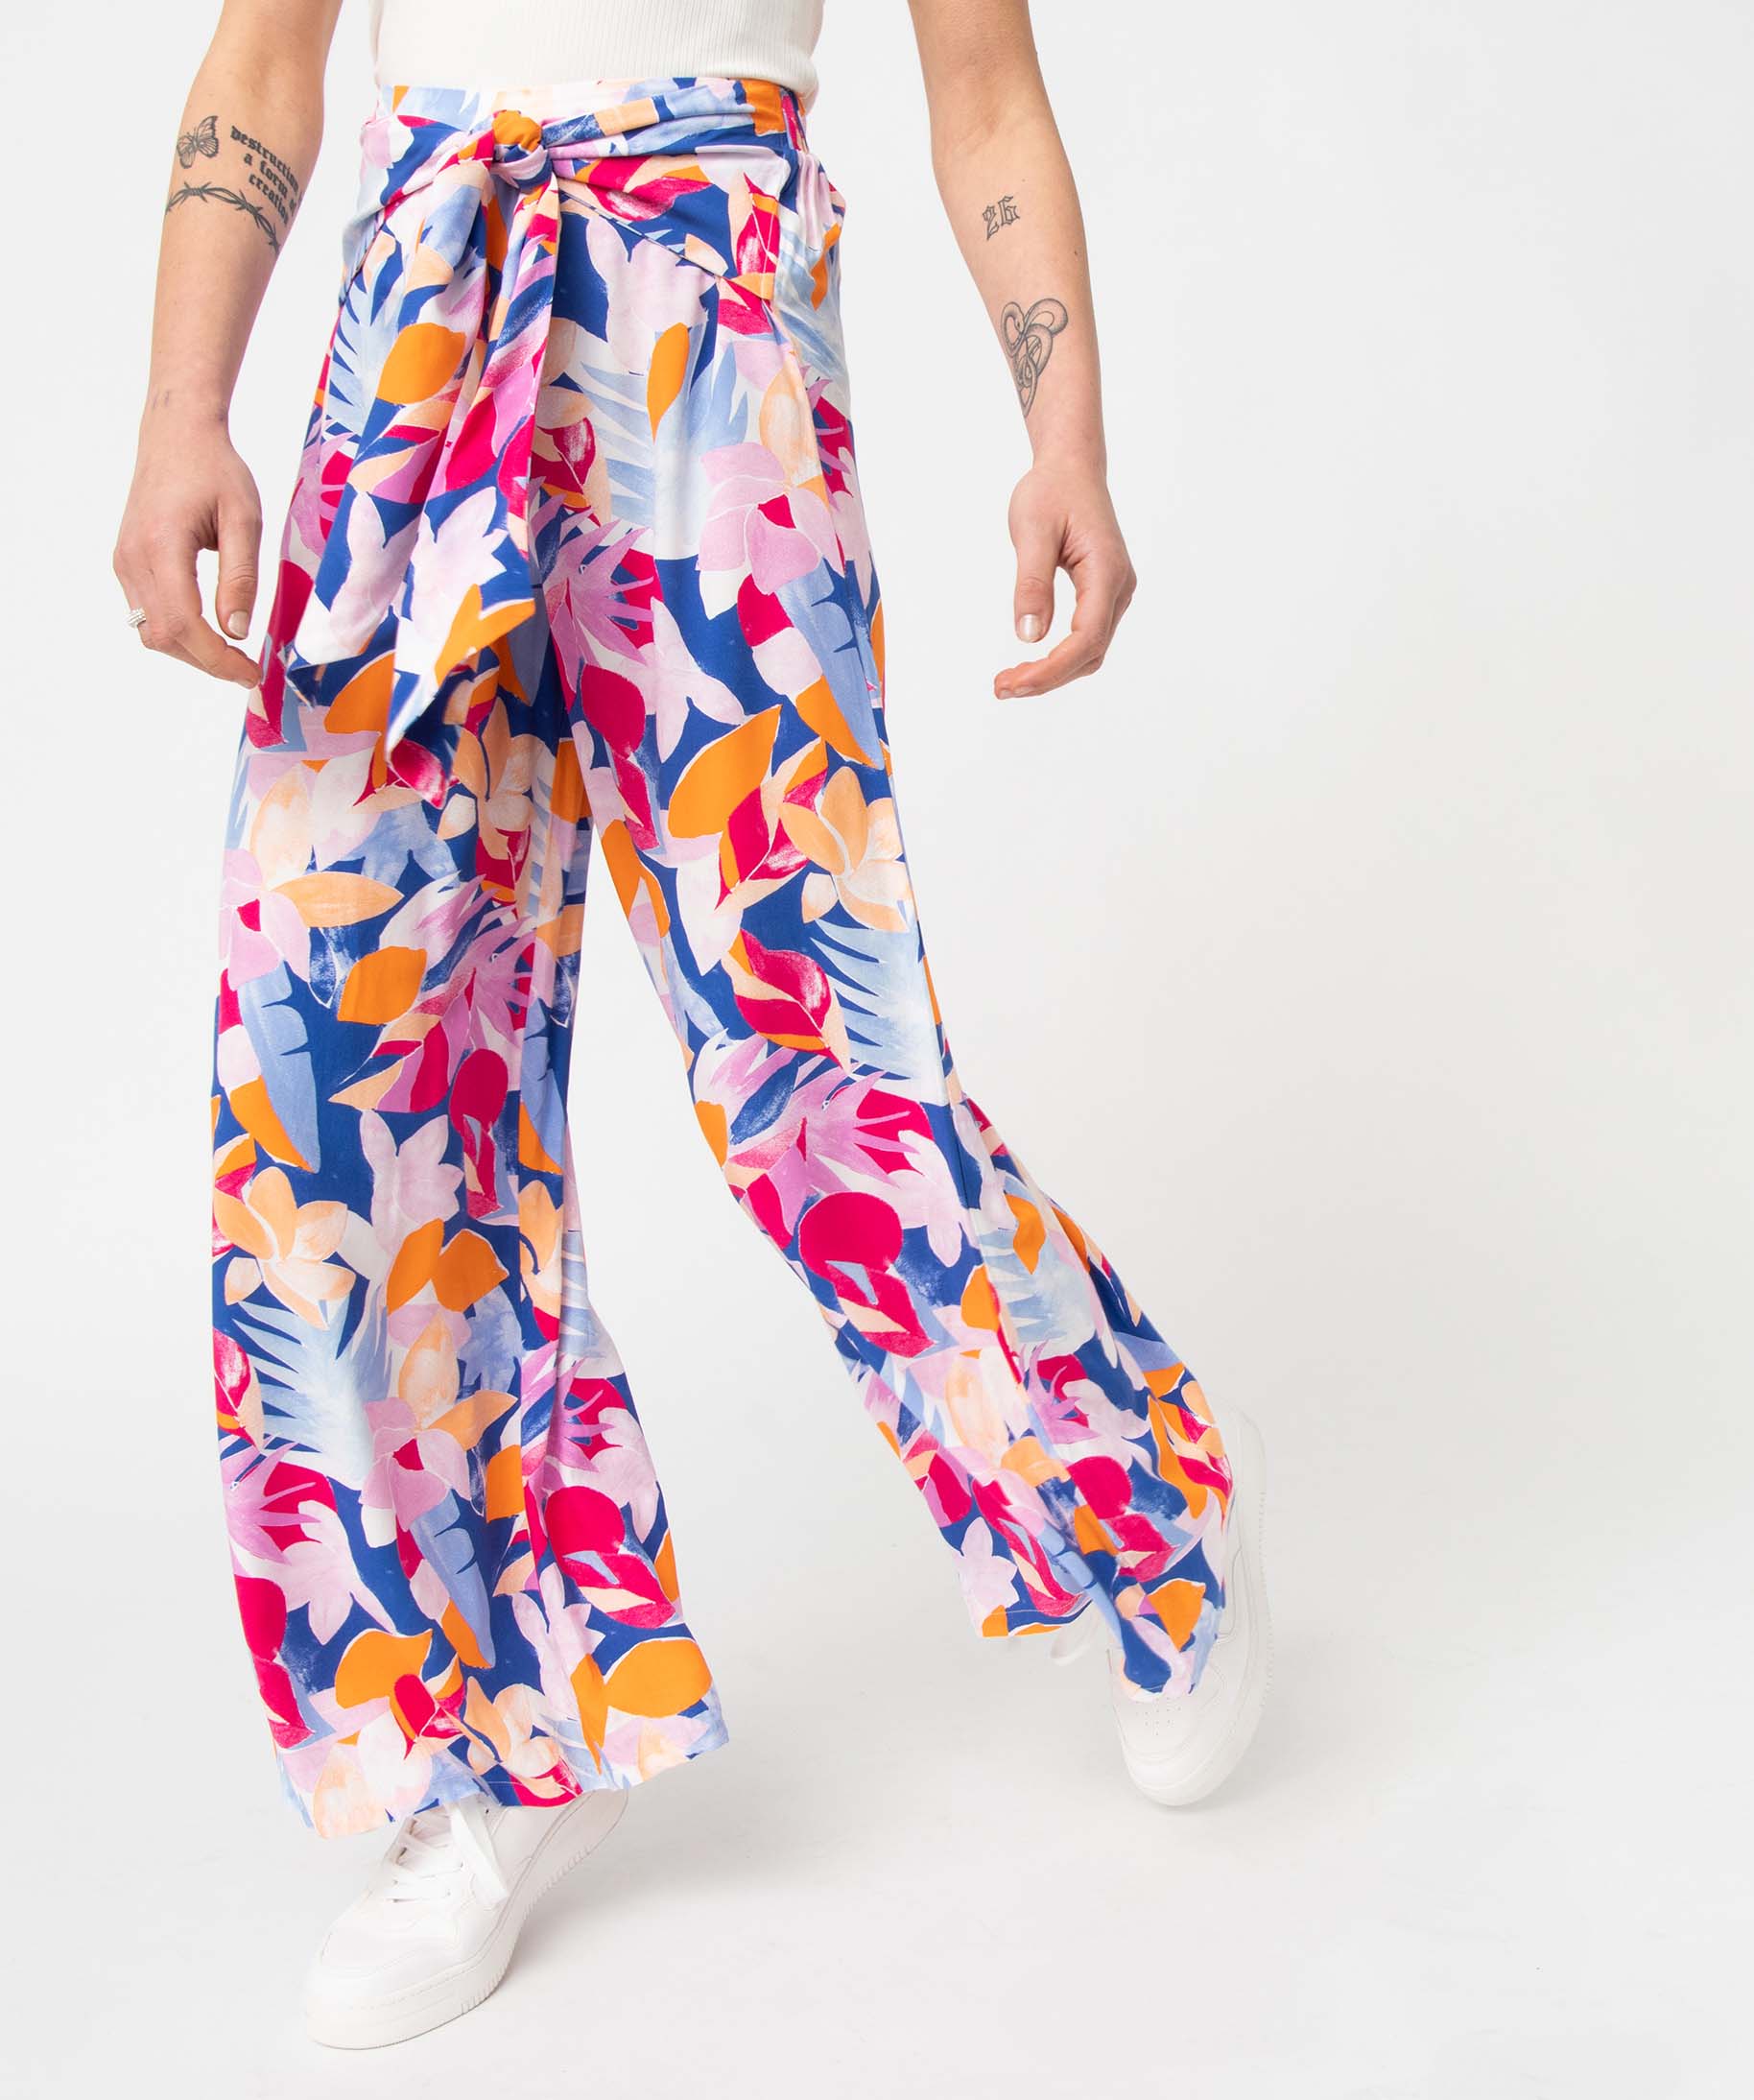 pantalon femme a motifs fleuris coupe flare imprime pantalons